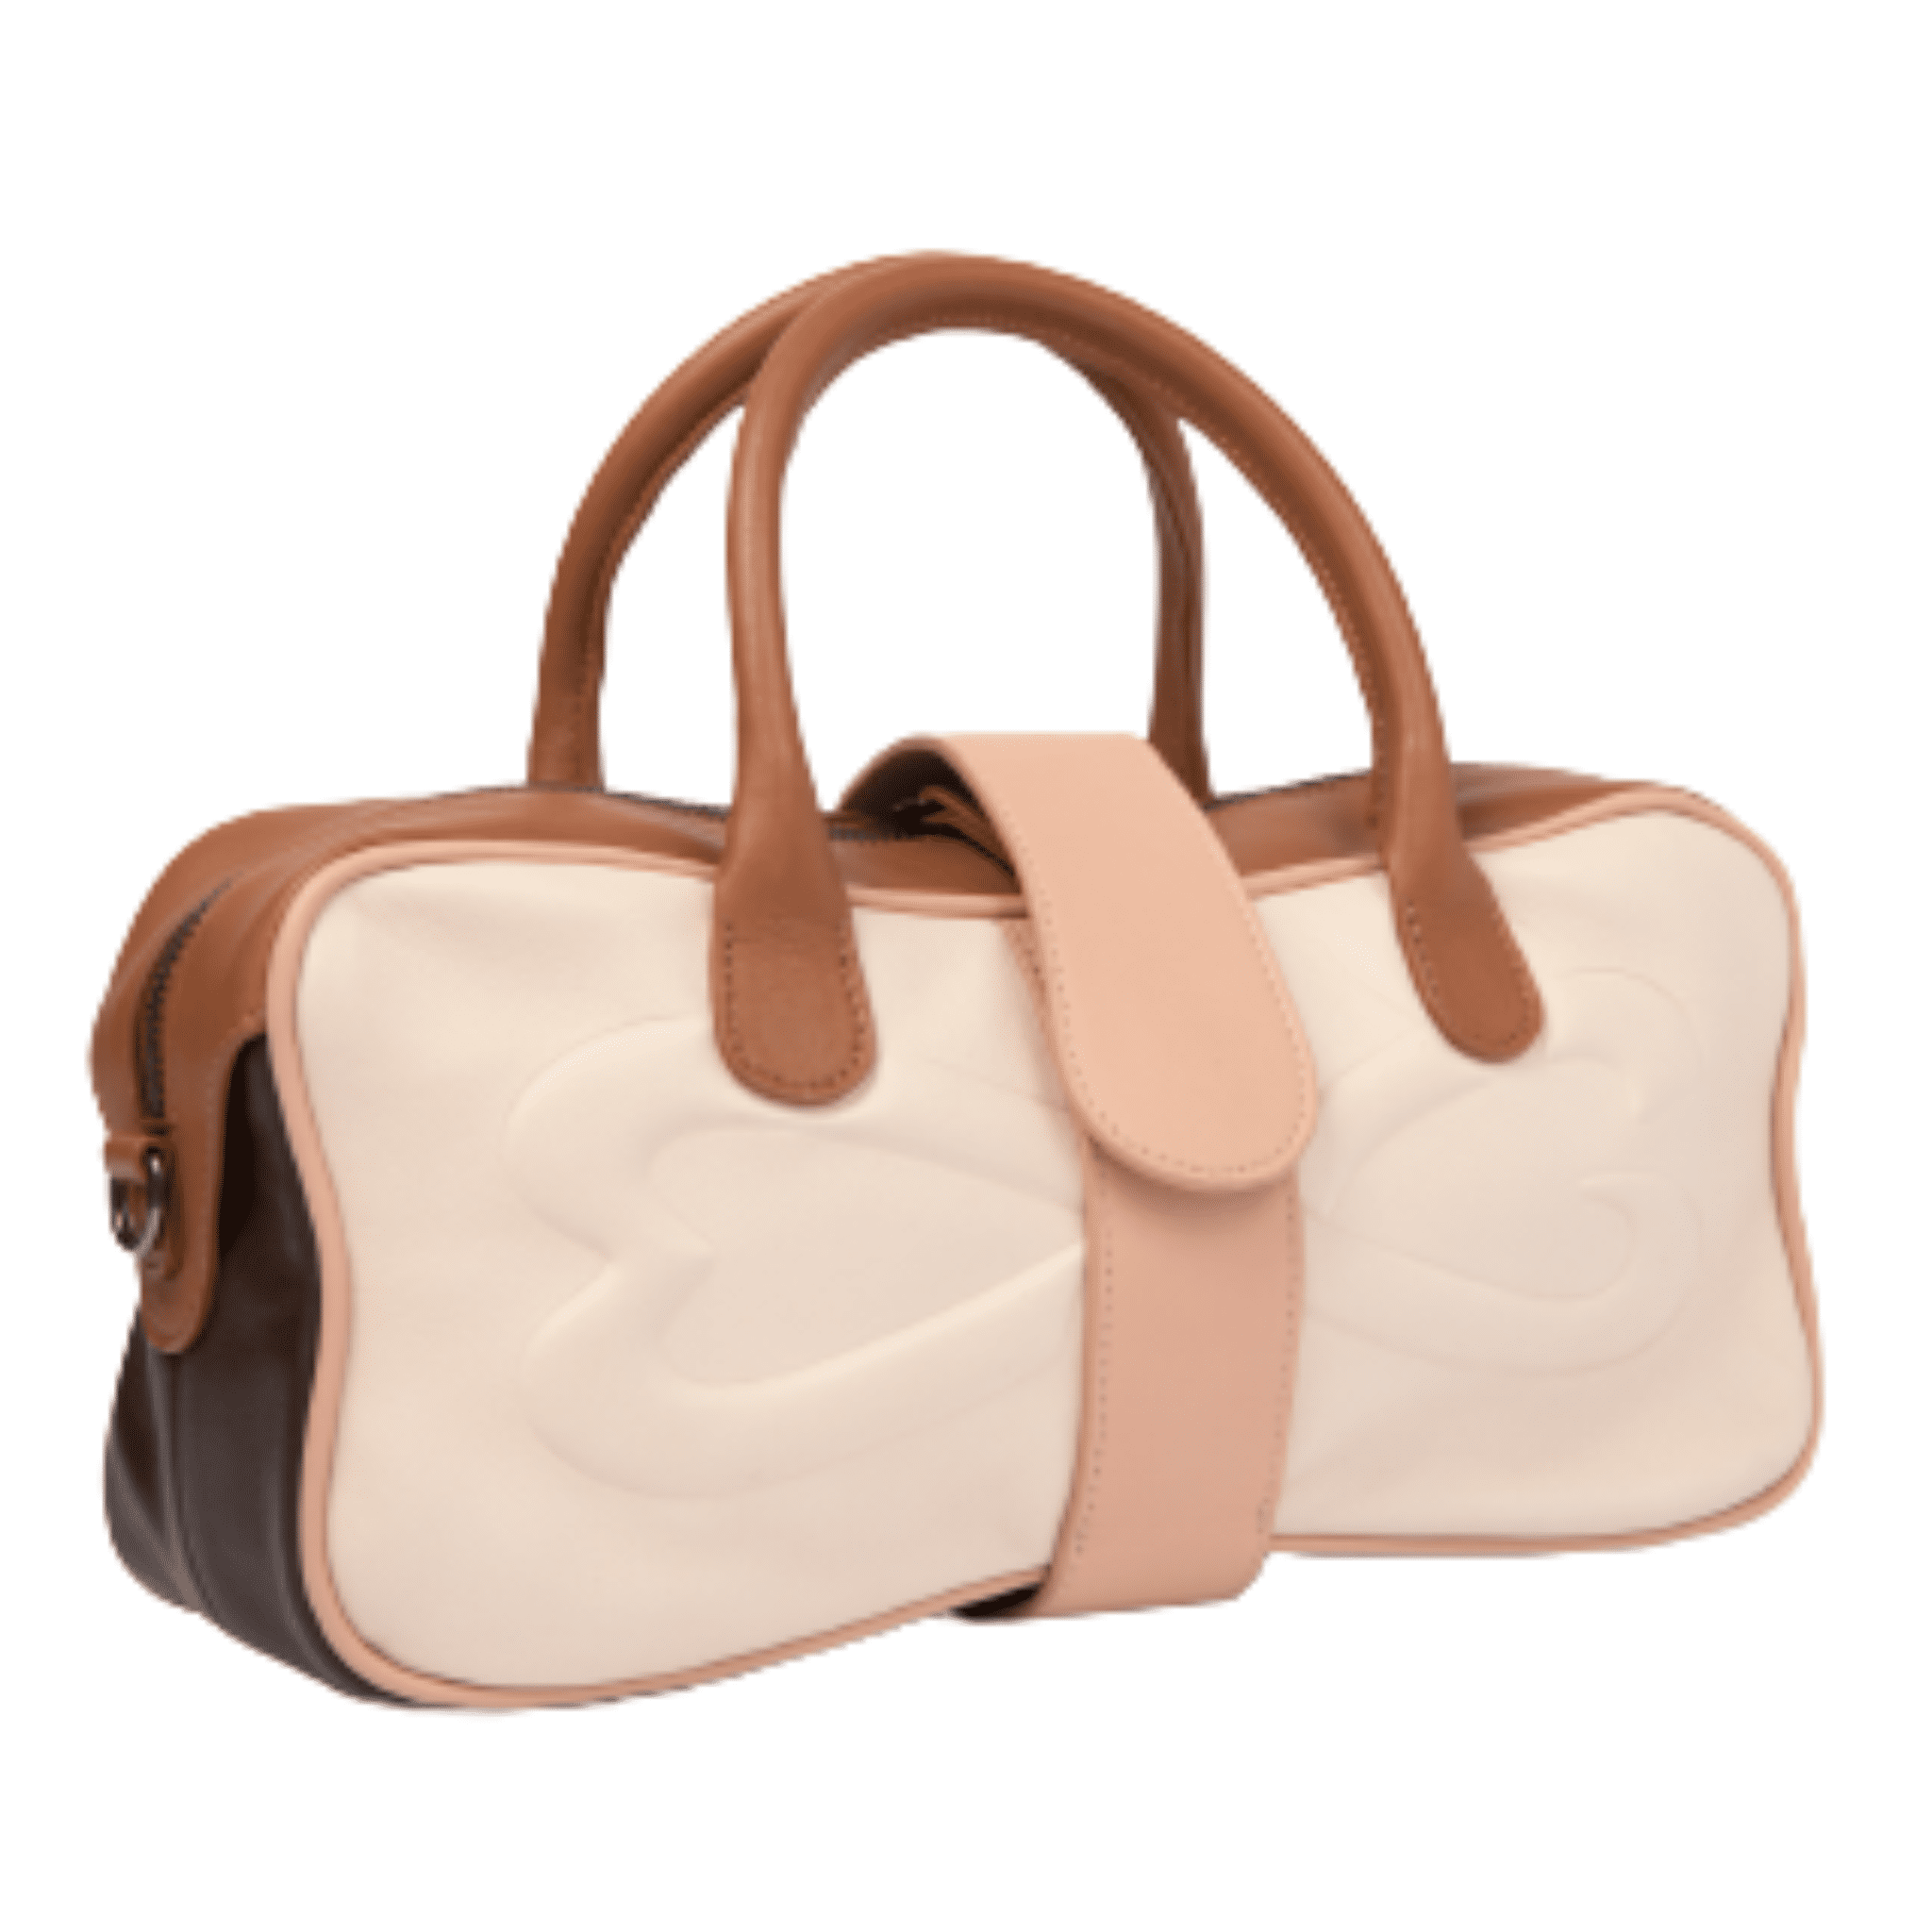 unique colorblock nappa leather handbag